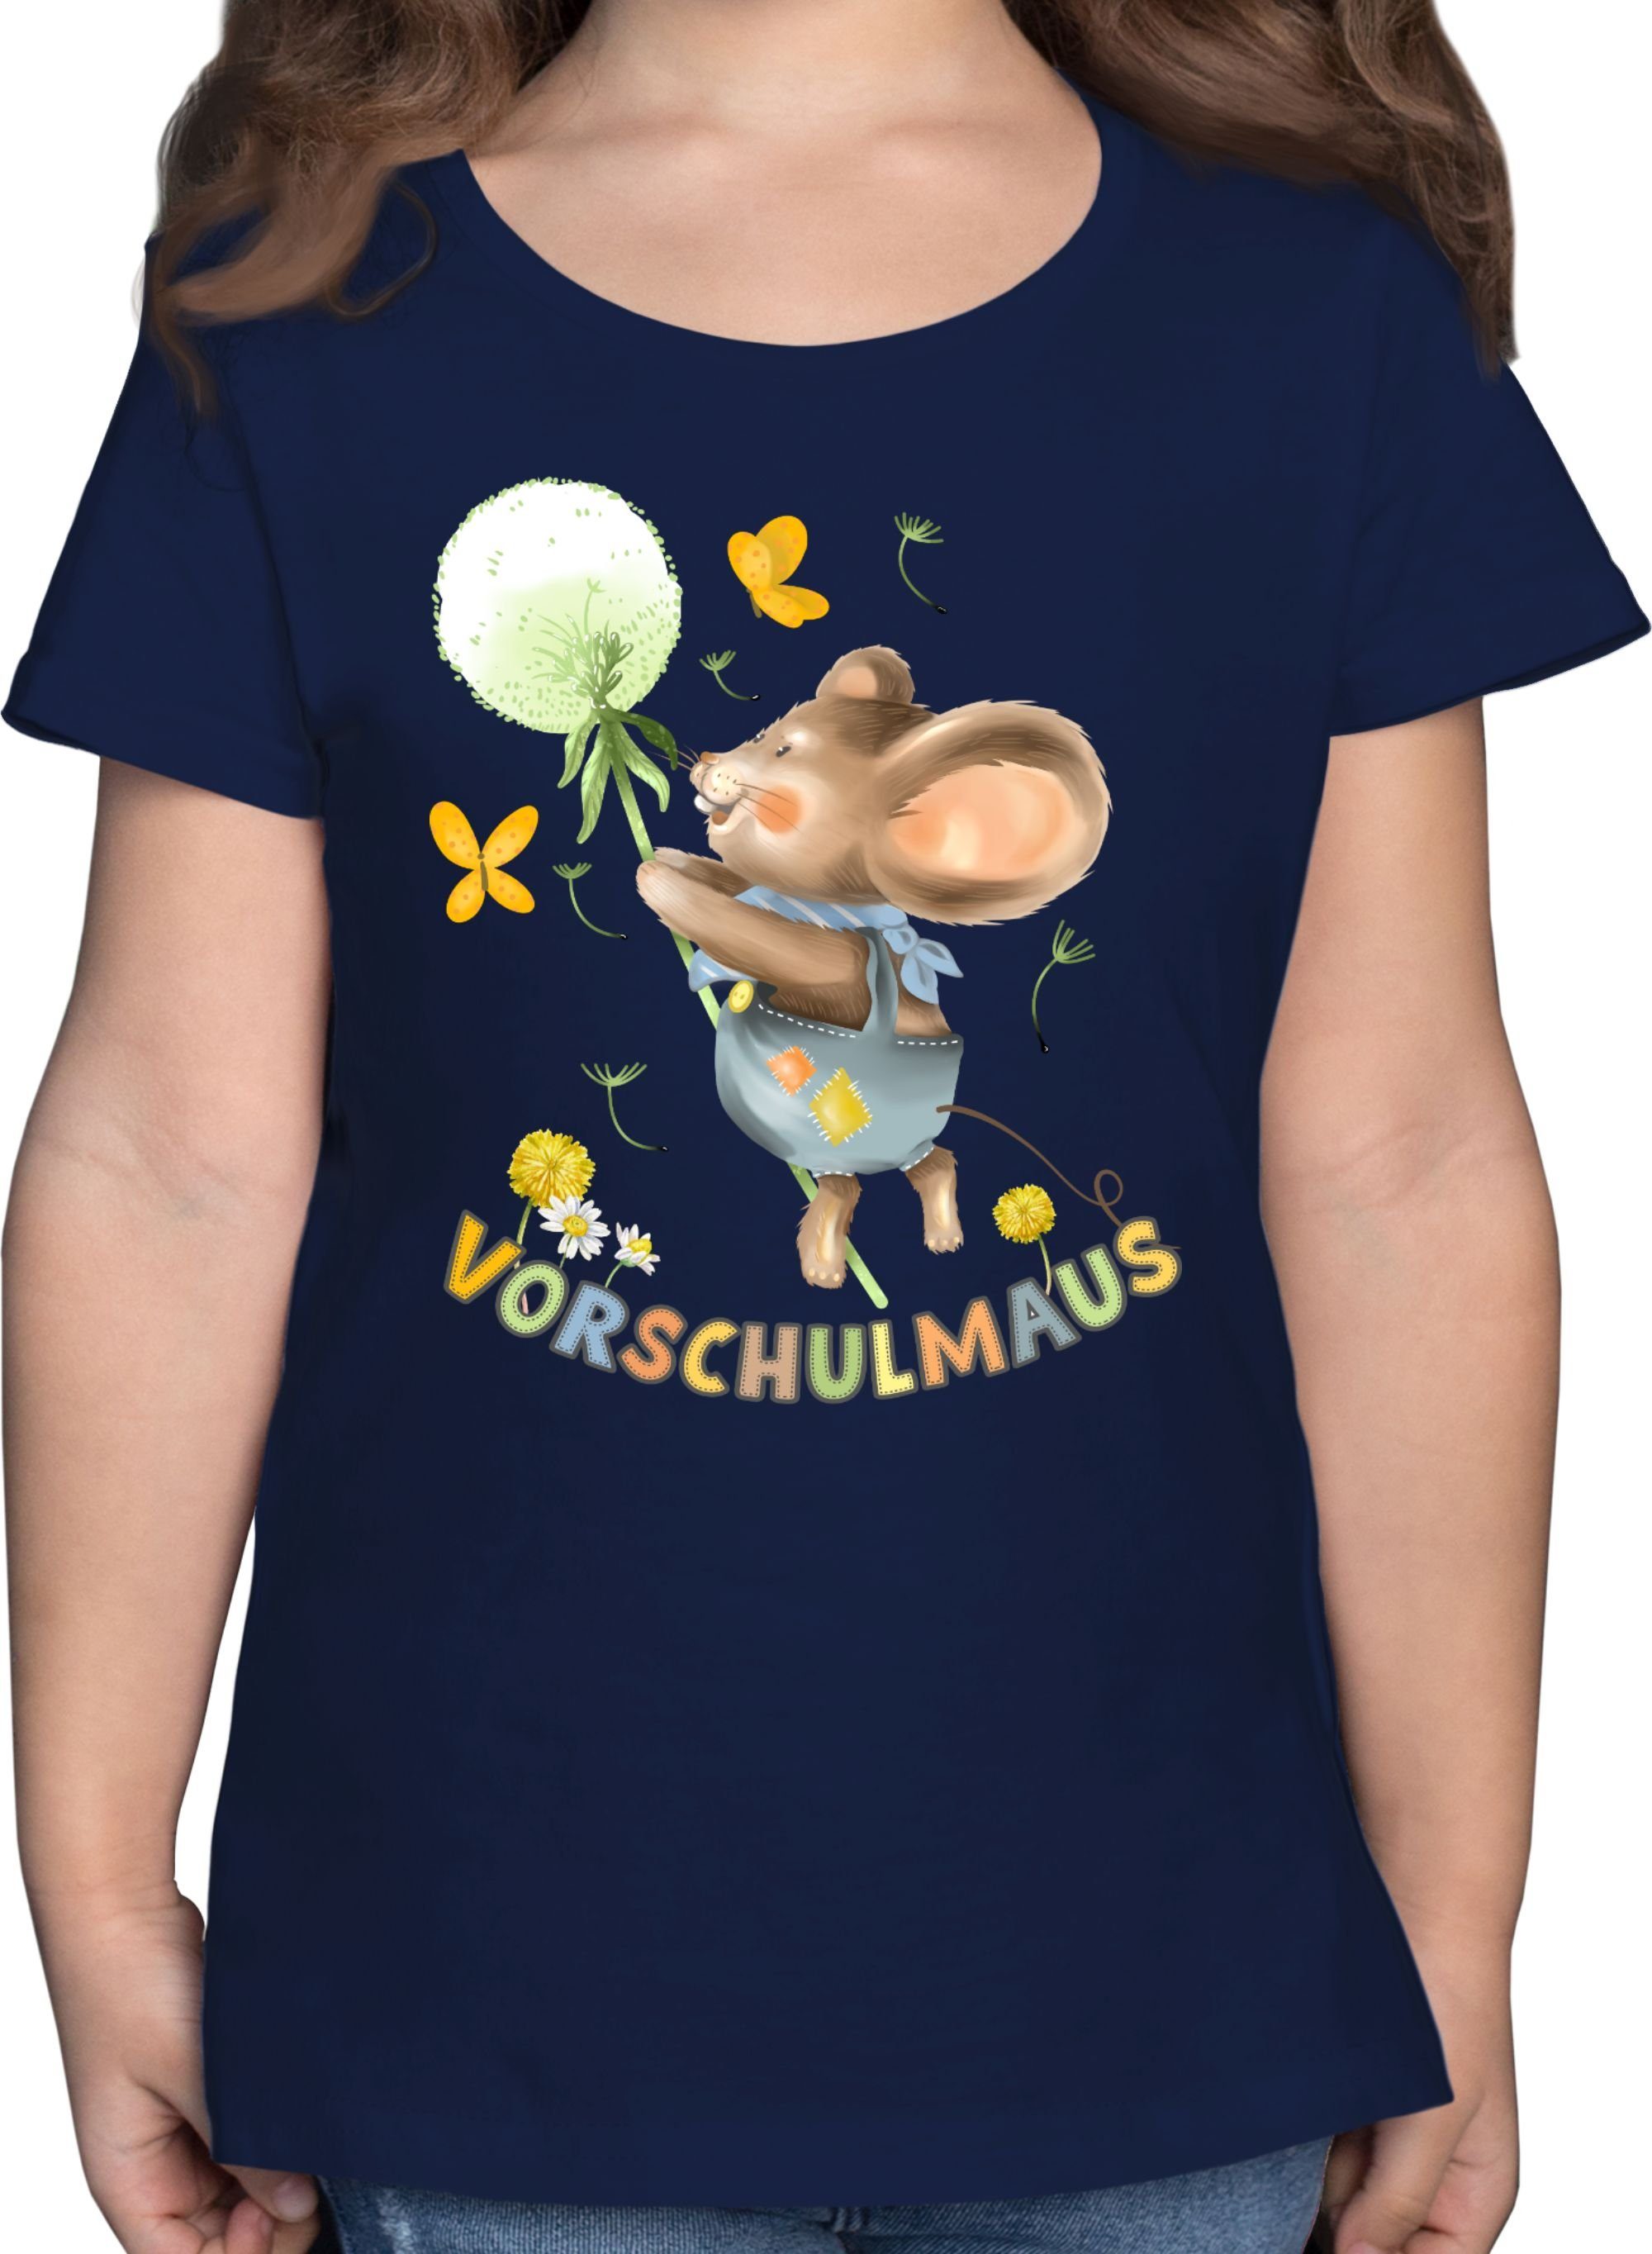 Shirtracer T-Shirt Vorschulmaus - Maus mit Pusteblume Einschulung Mädchen 3 Dunkelblau